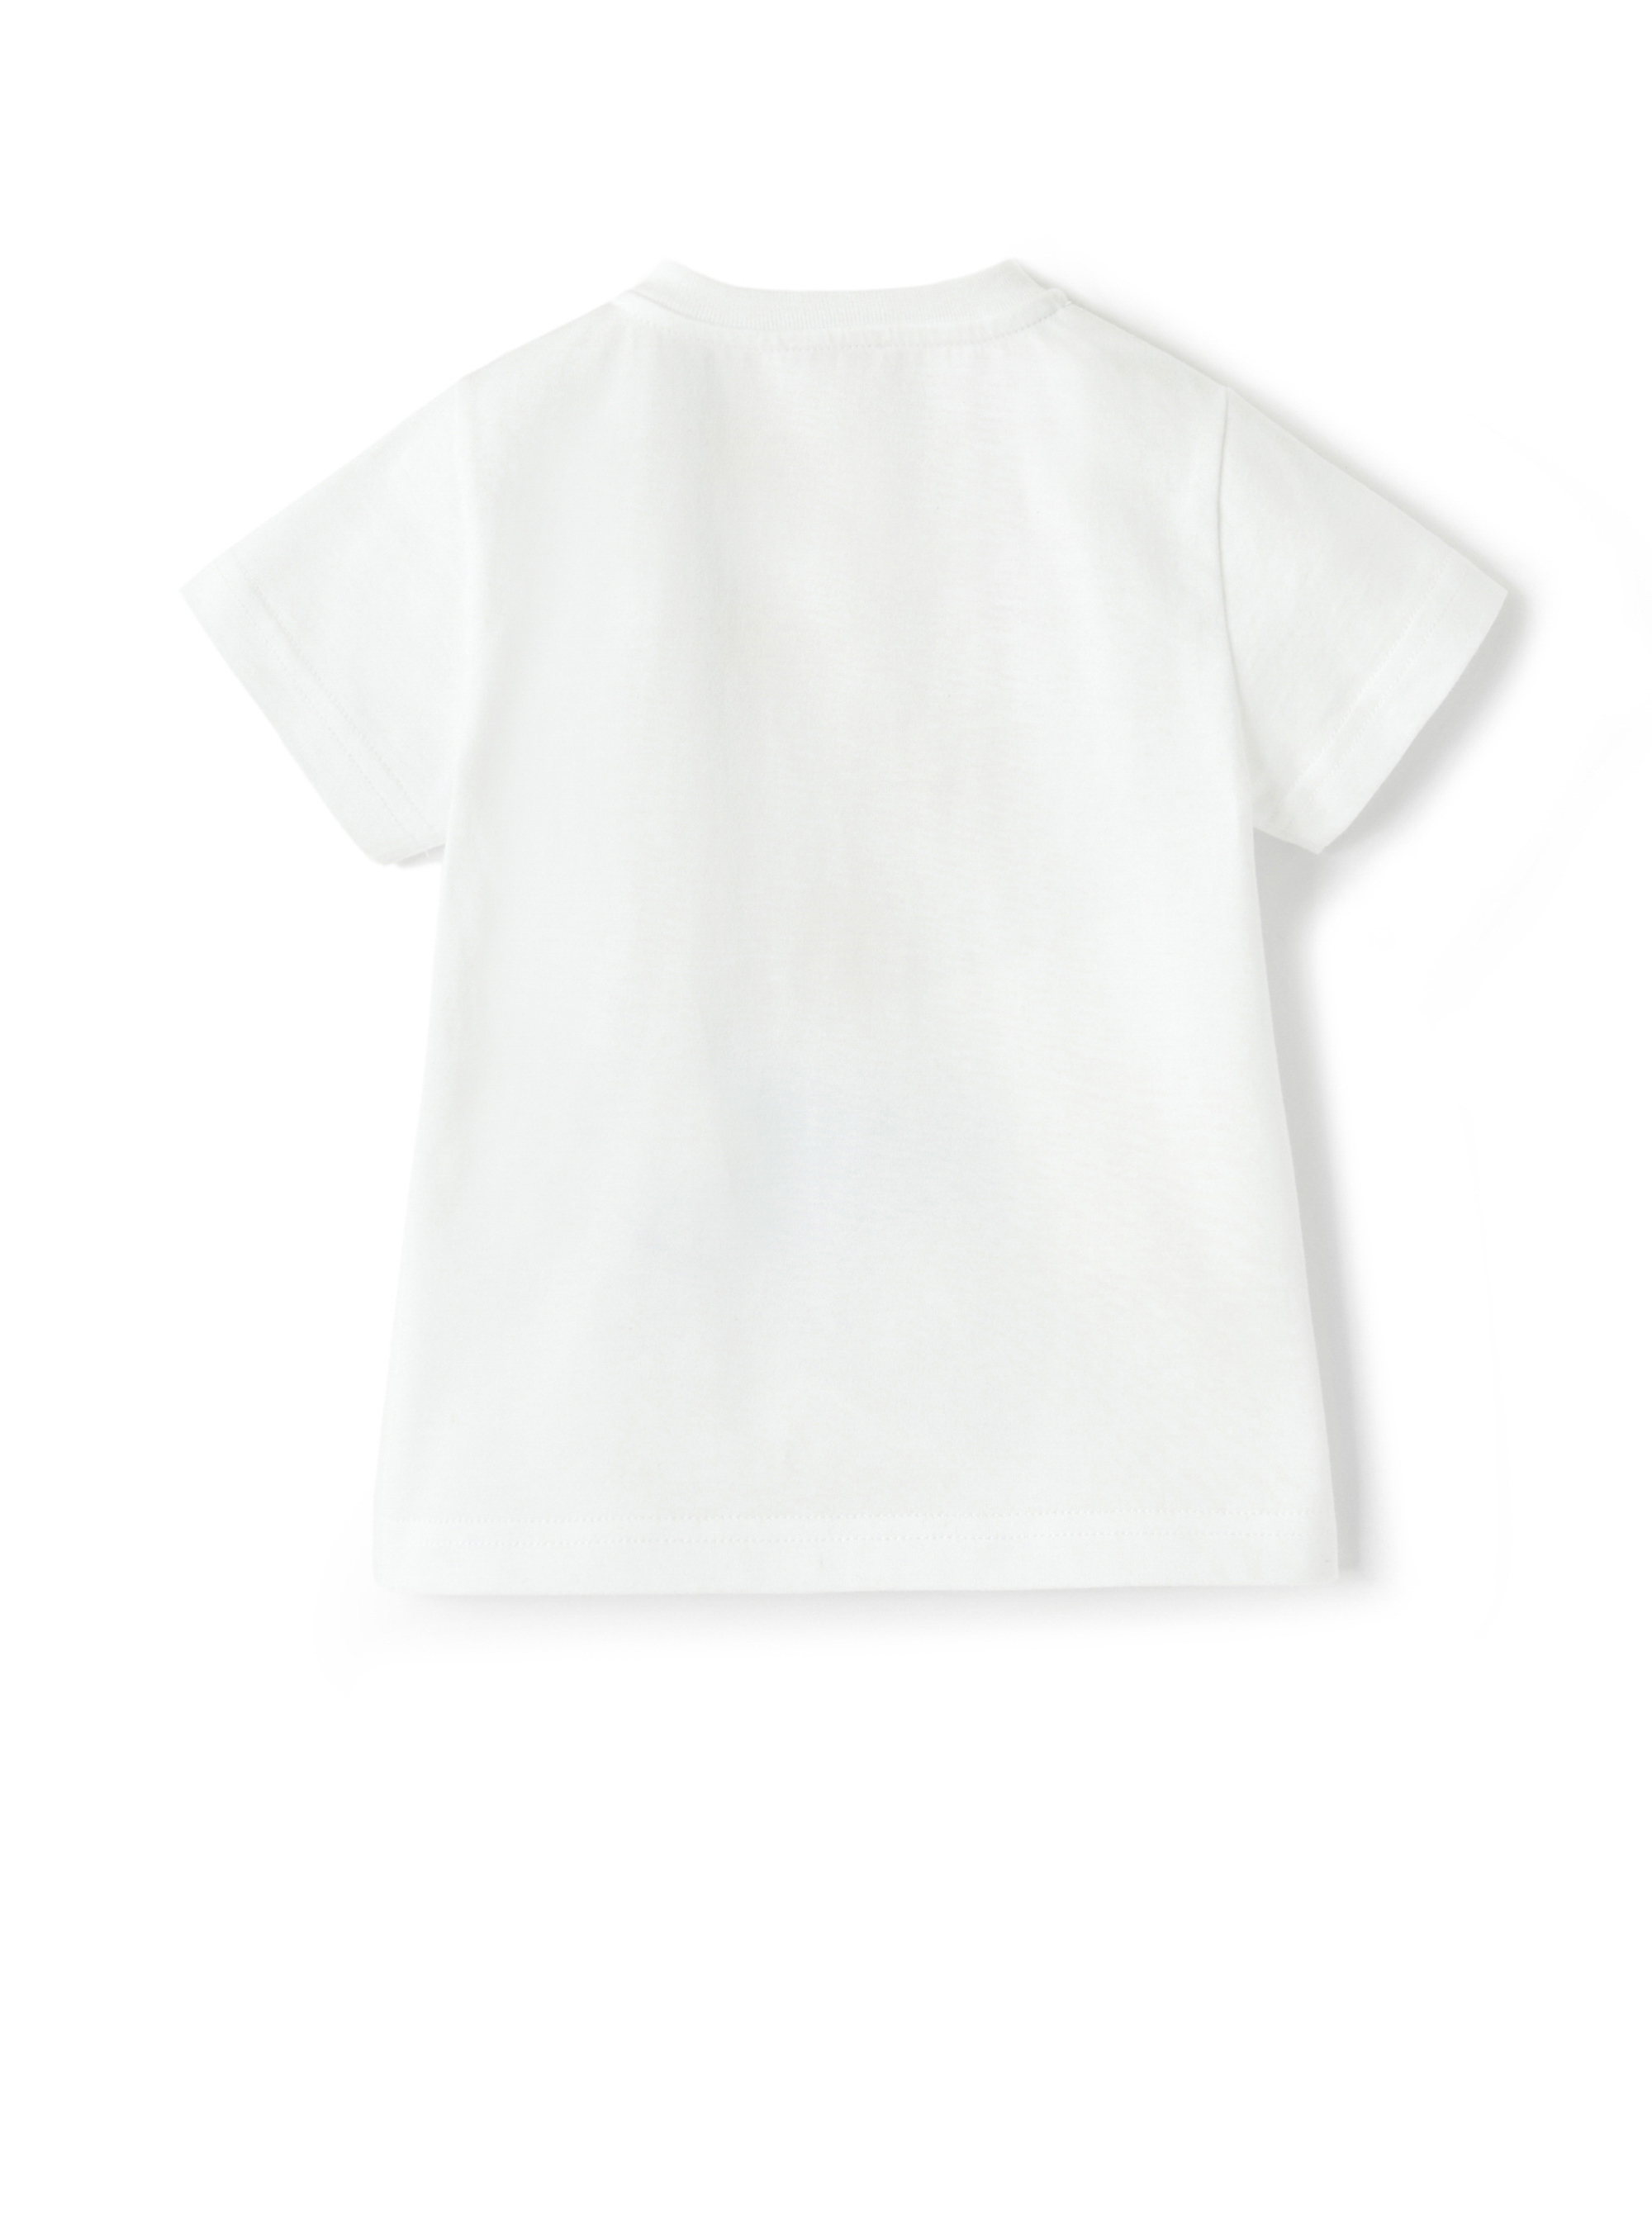 T-shirt in jersey con pulcini - Bianco | Il Gufo